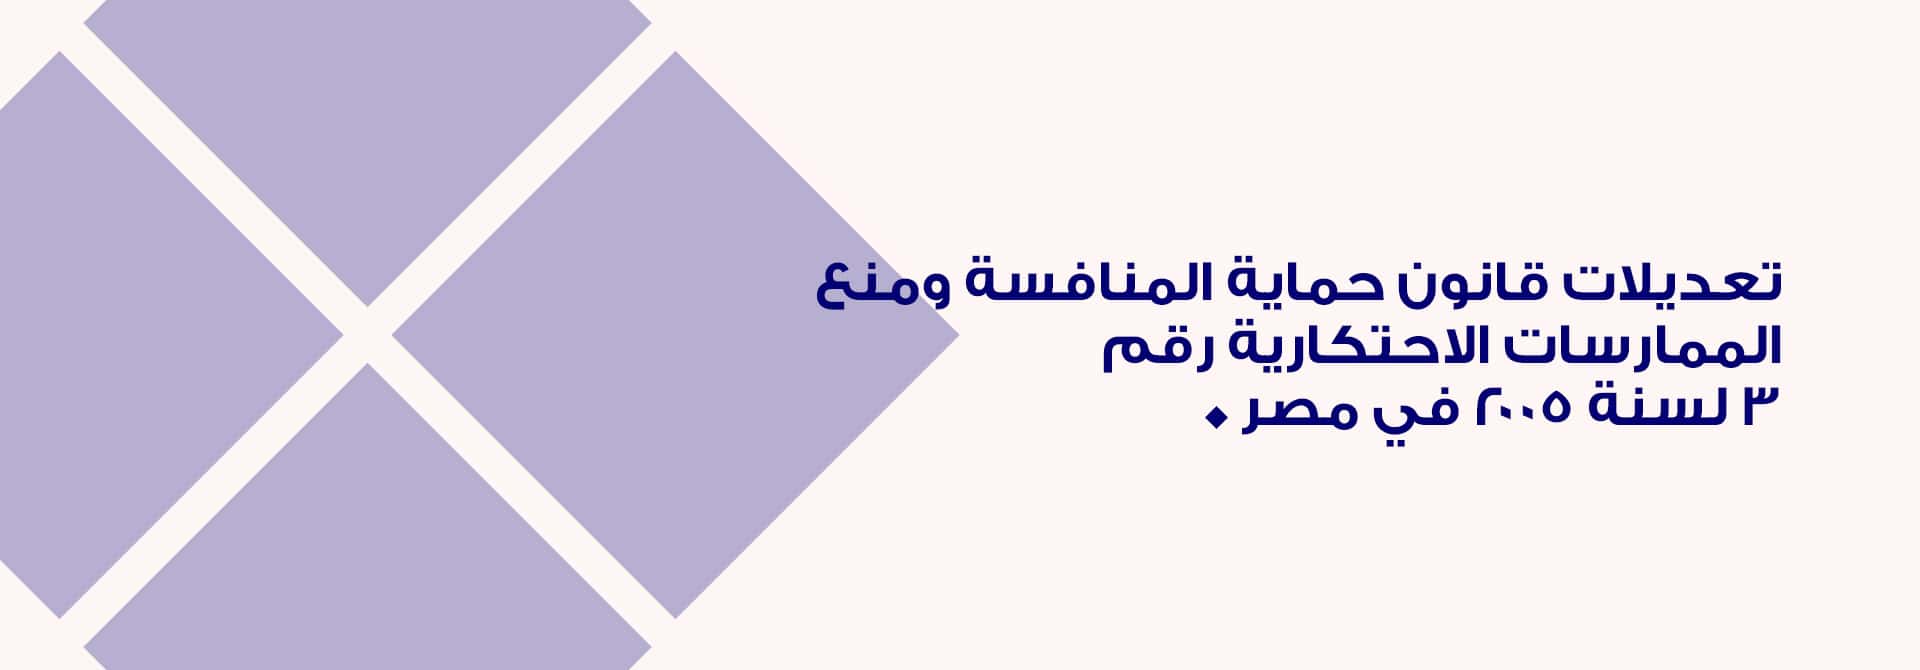 تعديلات قانون حماية المنافسة ومنع الممارسات الاحتكارية رقم 3 لسنة 2005 في مصر